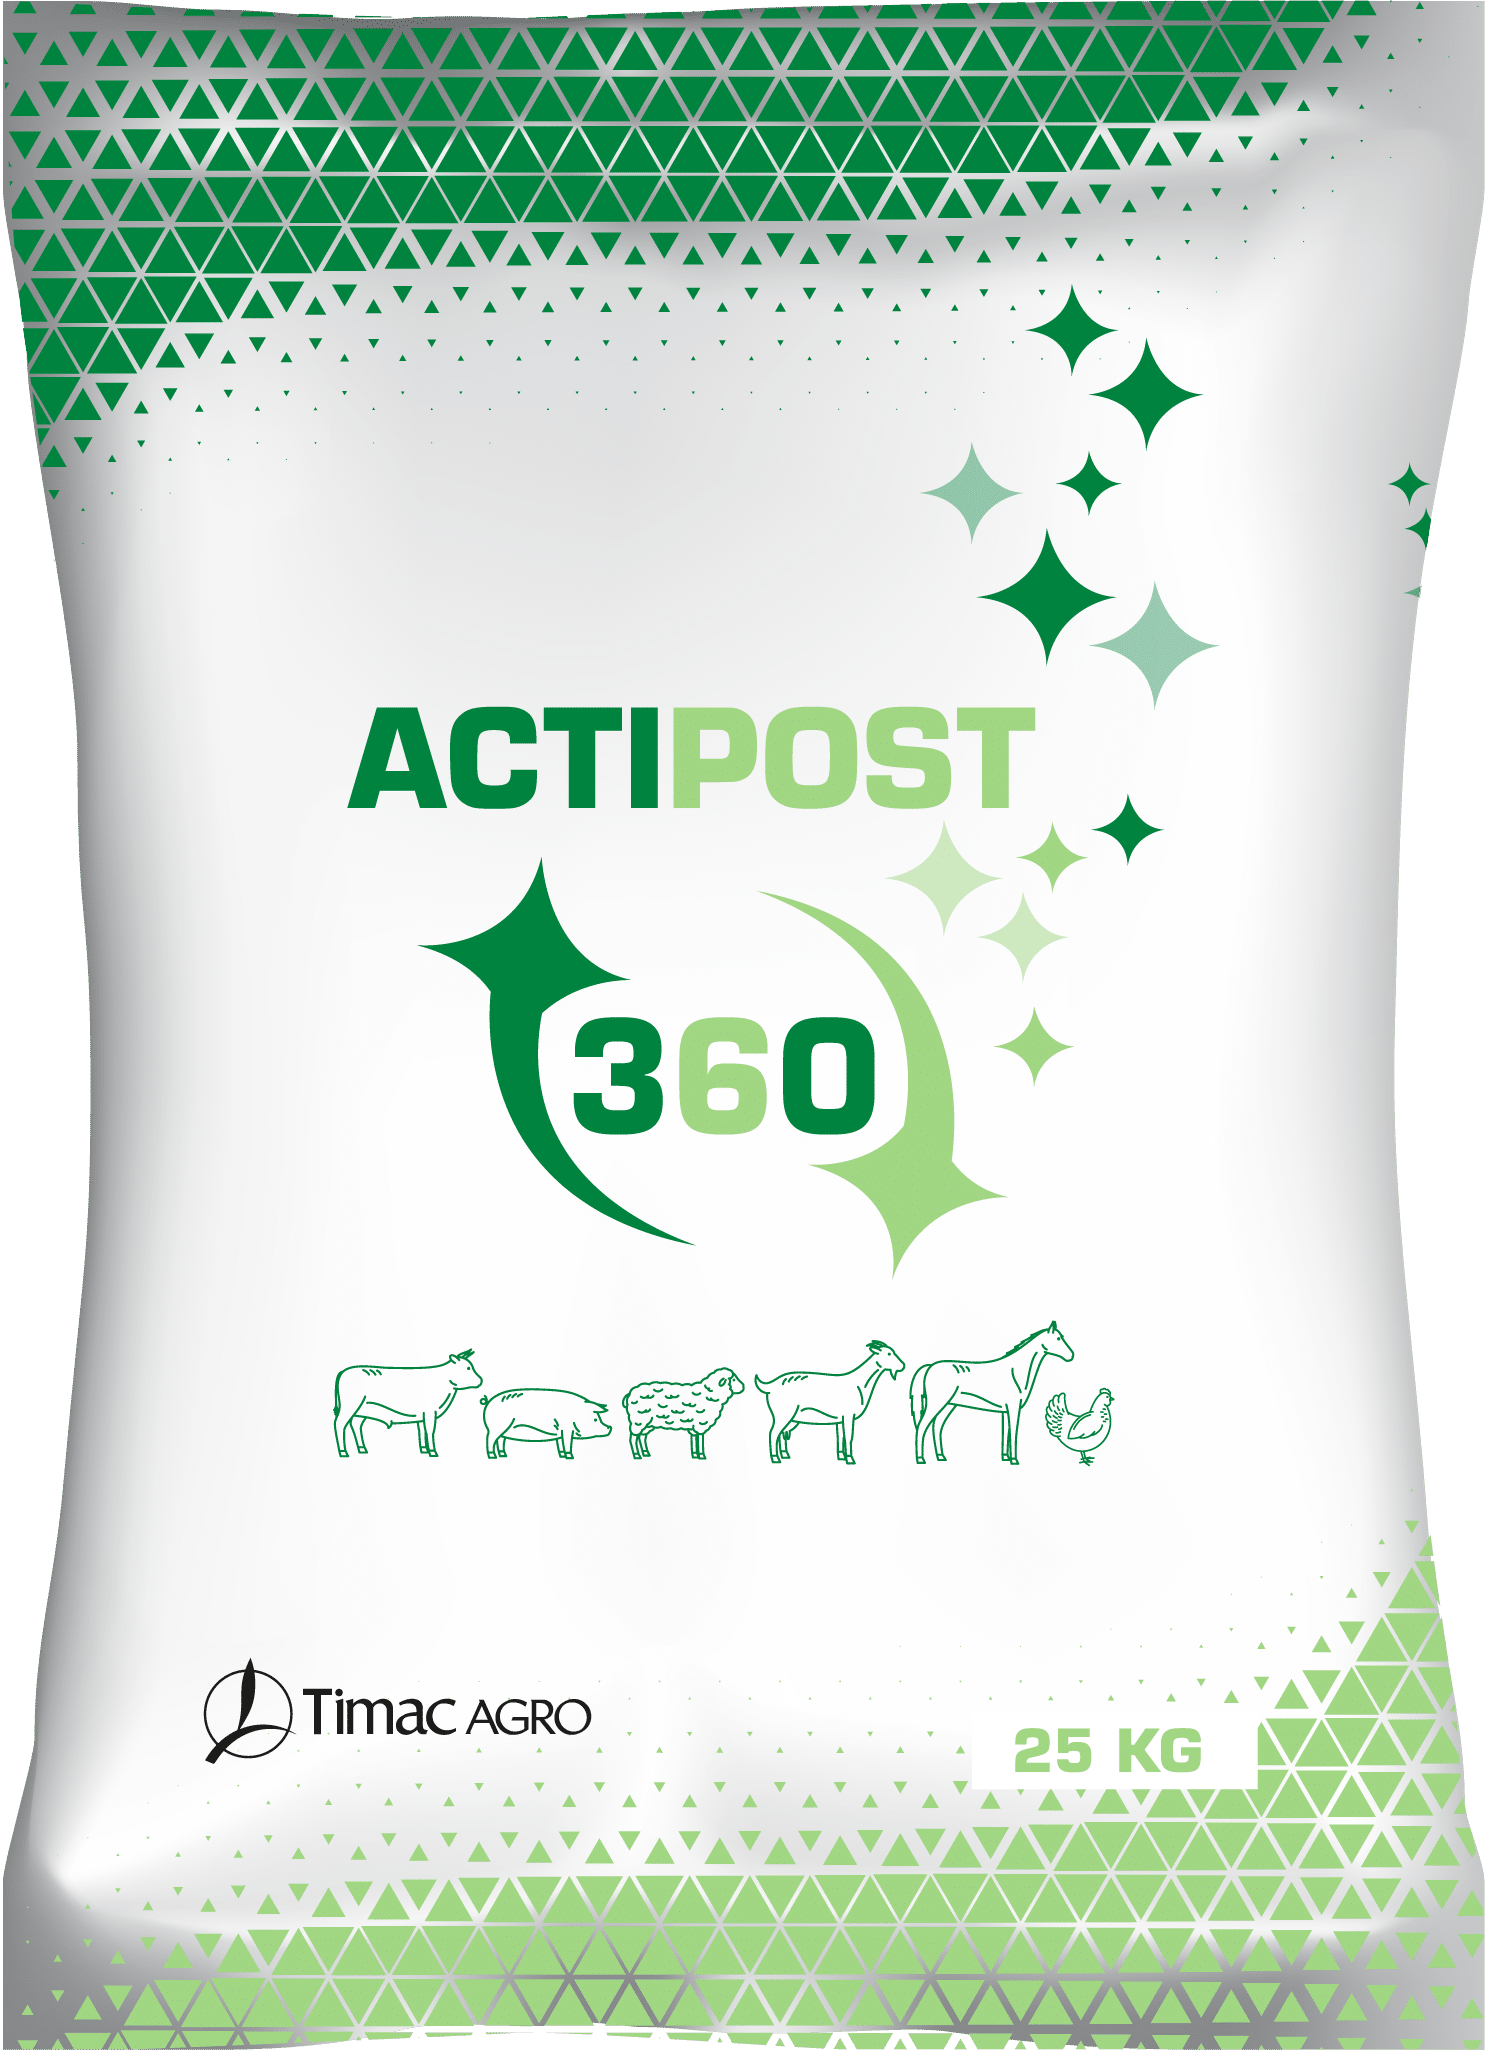 ACTIPOST 360